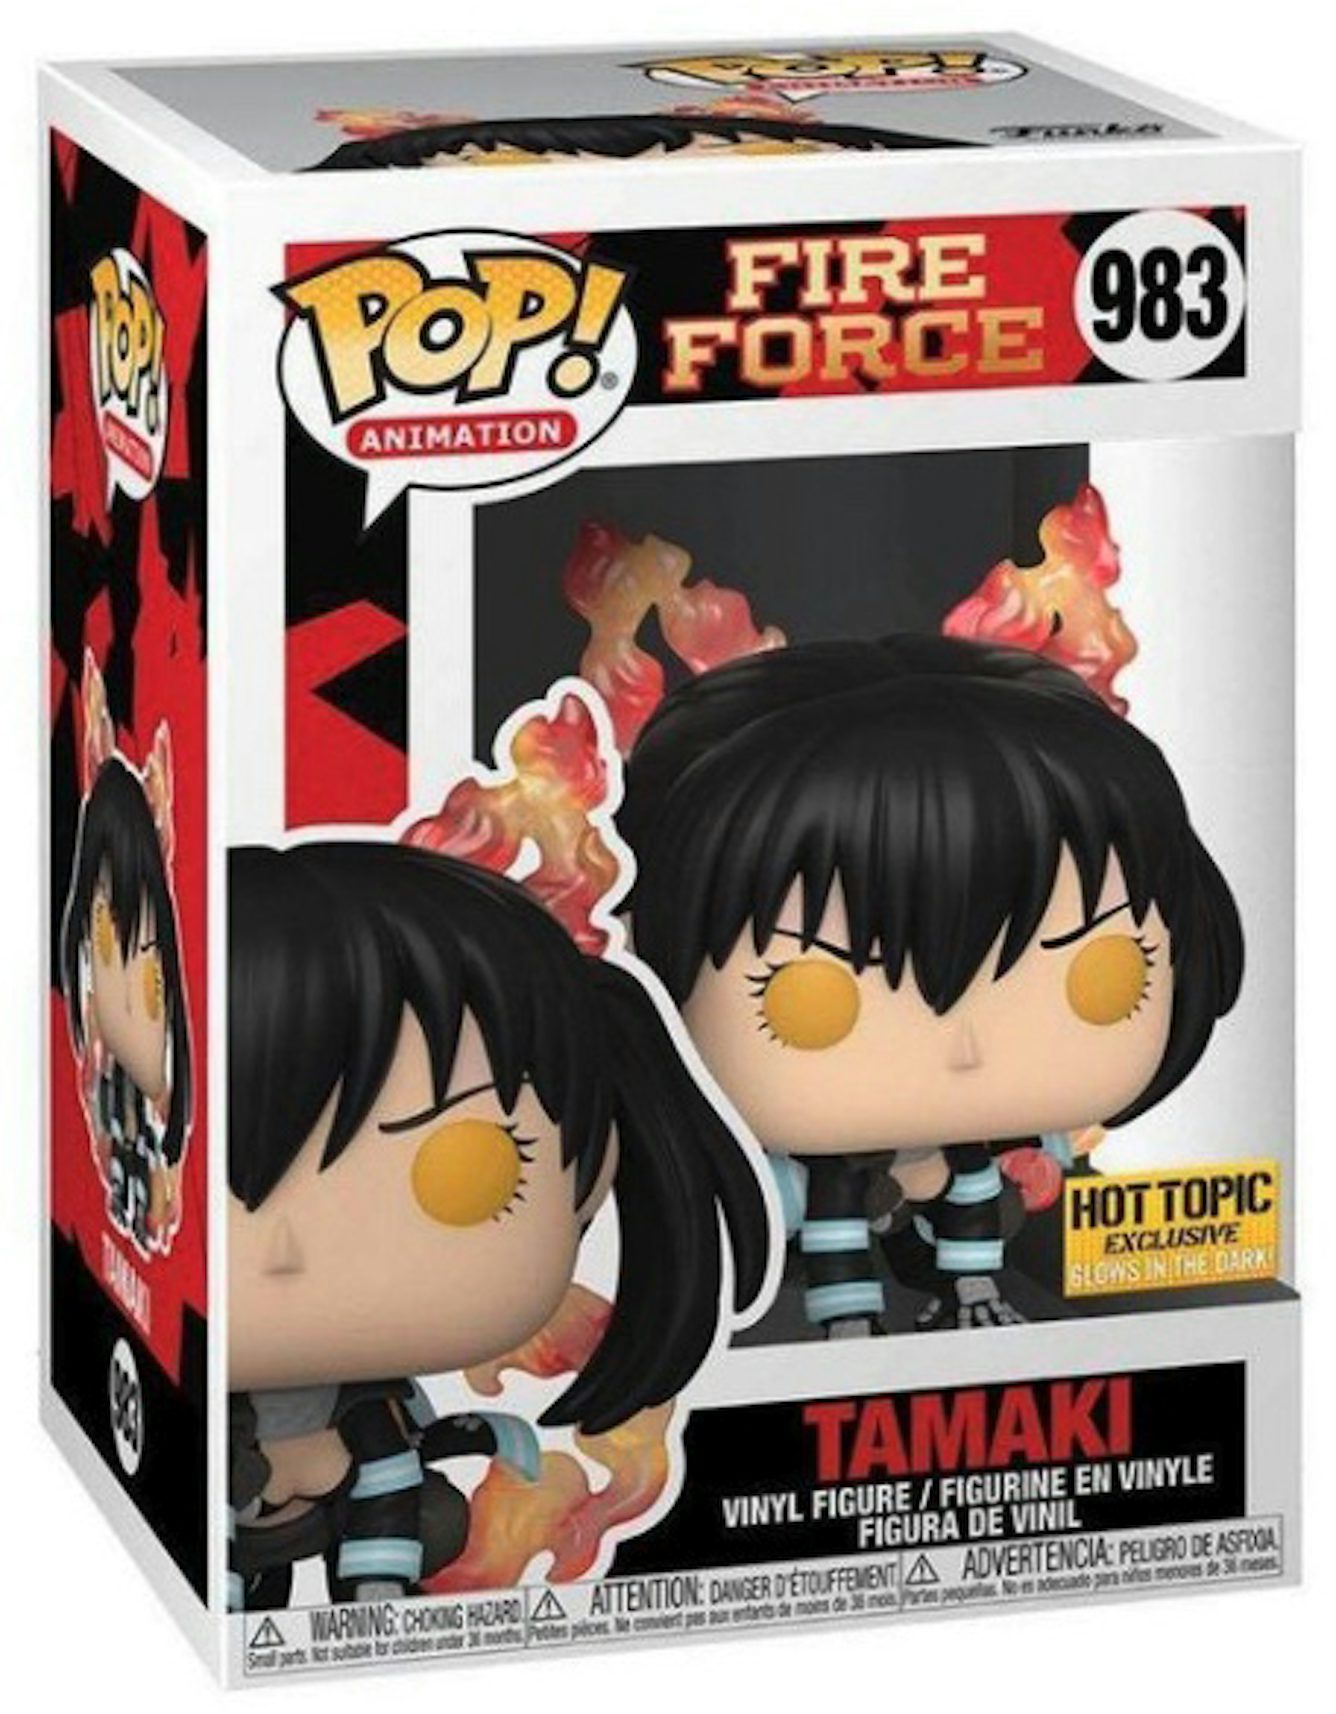 Fire Force Season 2 – Temos que falar sobre Tamaki